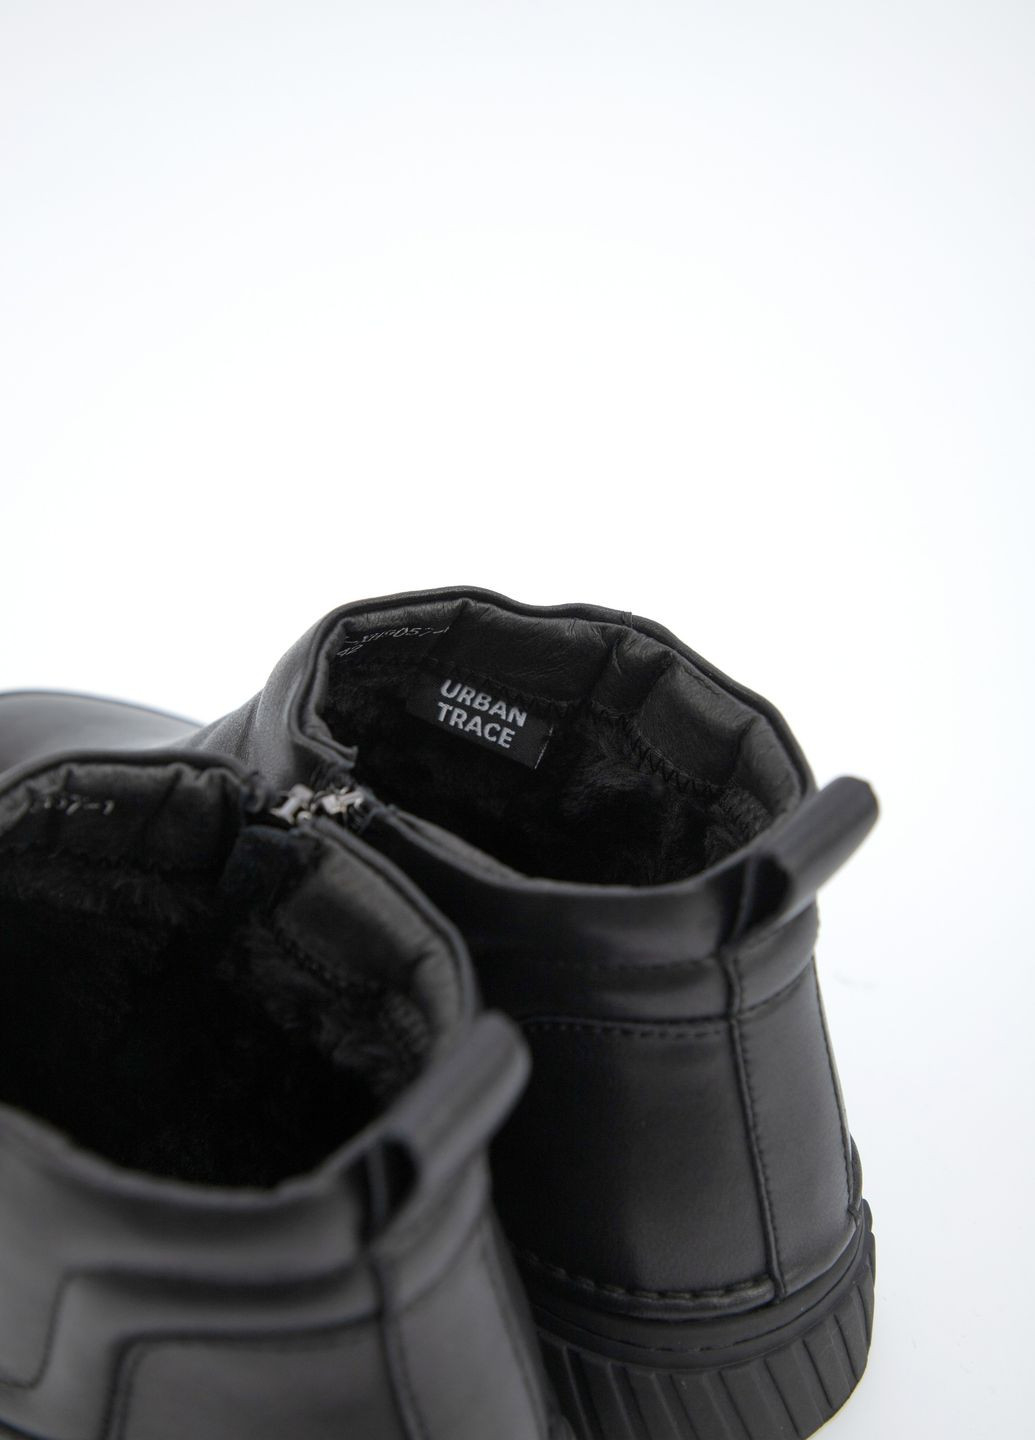 Черные осенние ботинки мужские URBAN TRACE